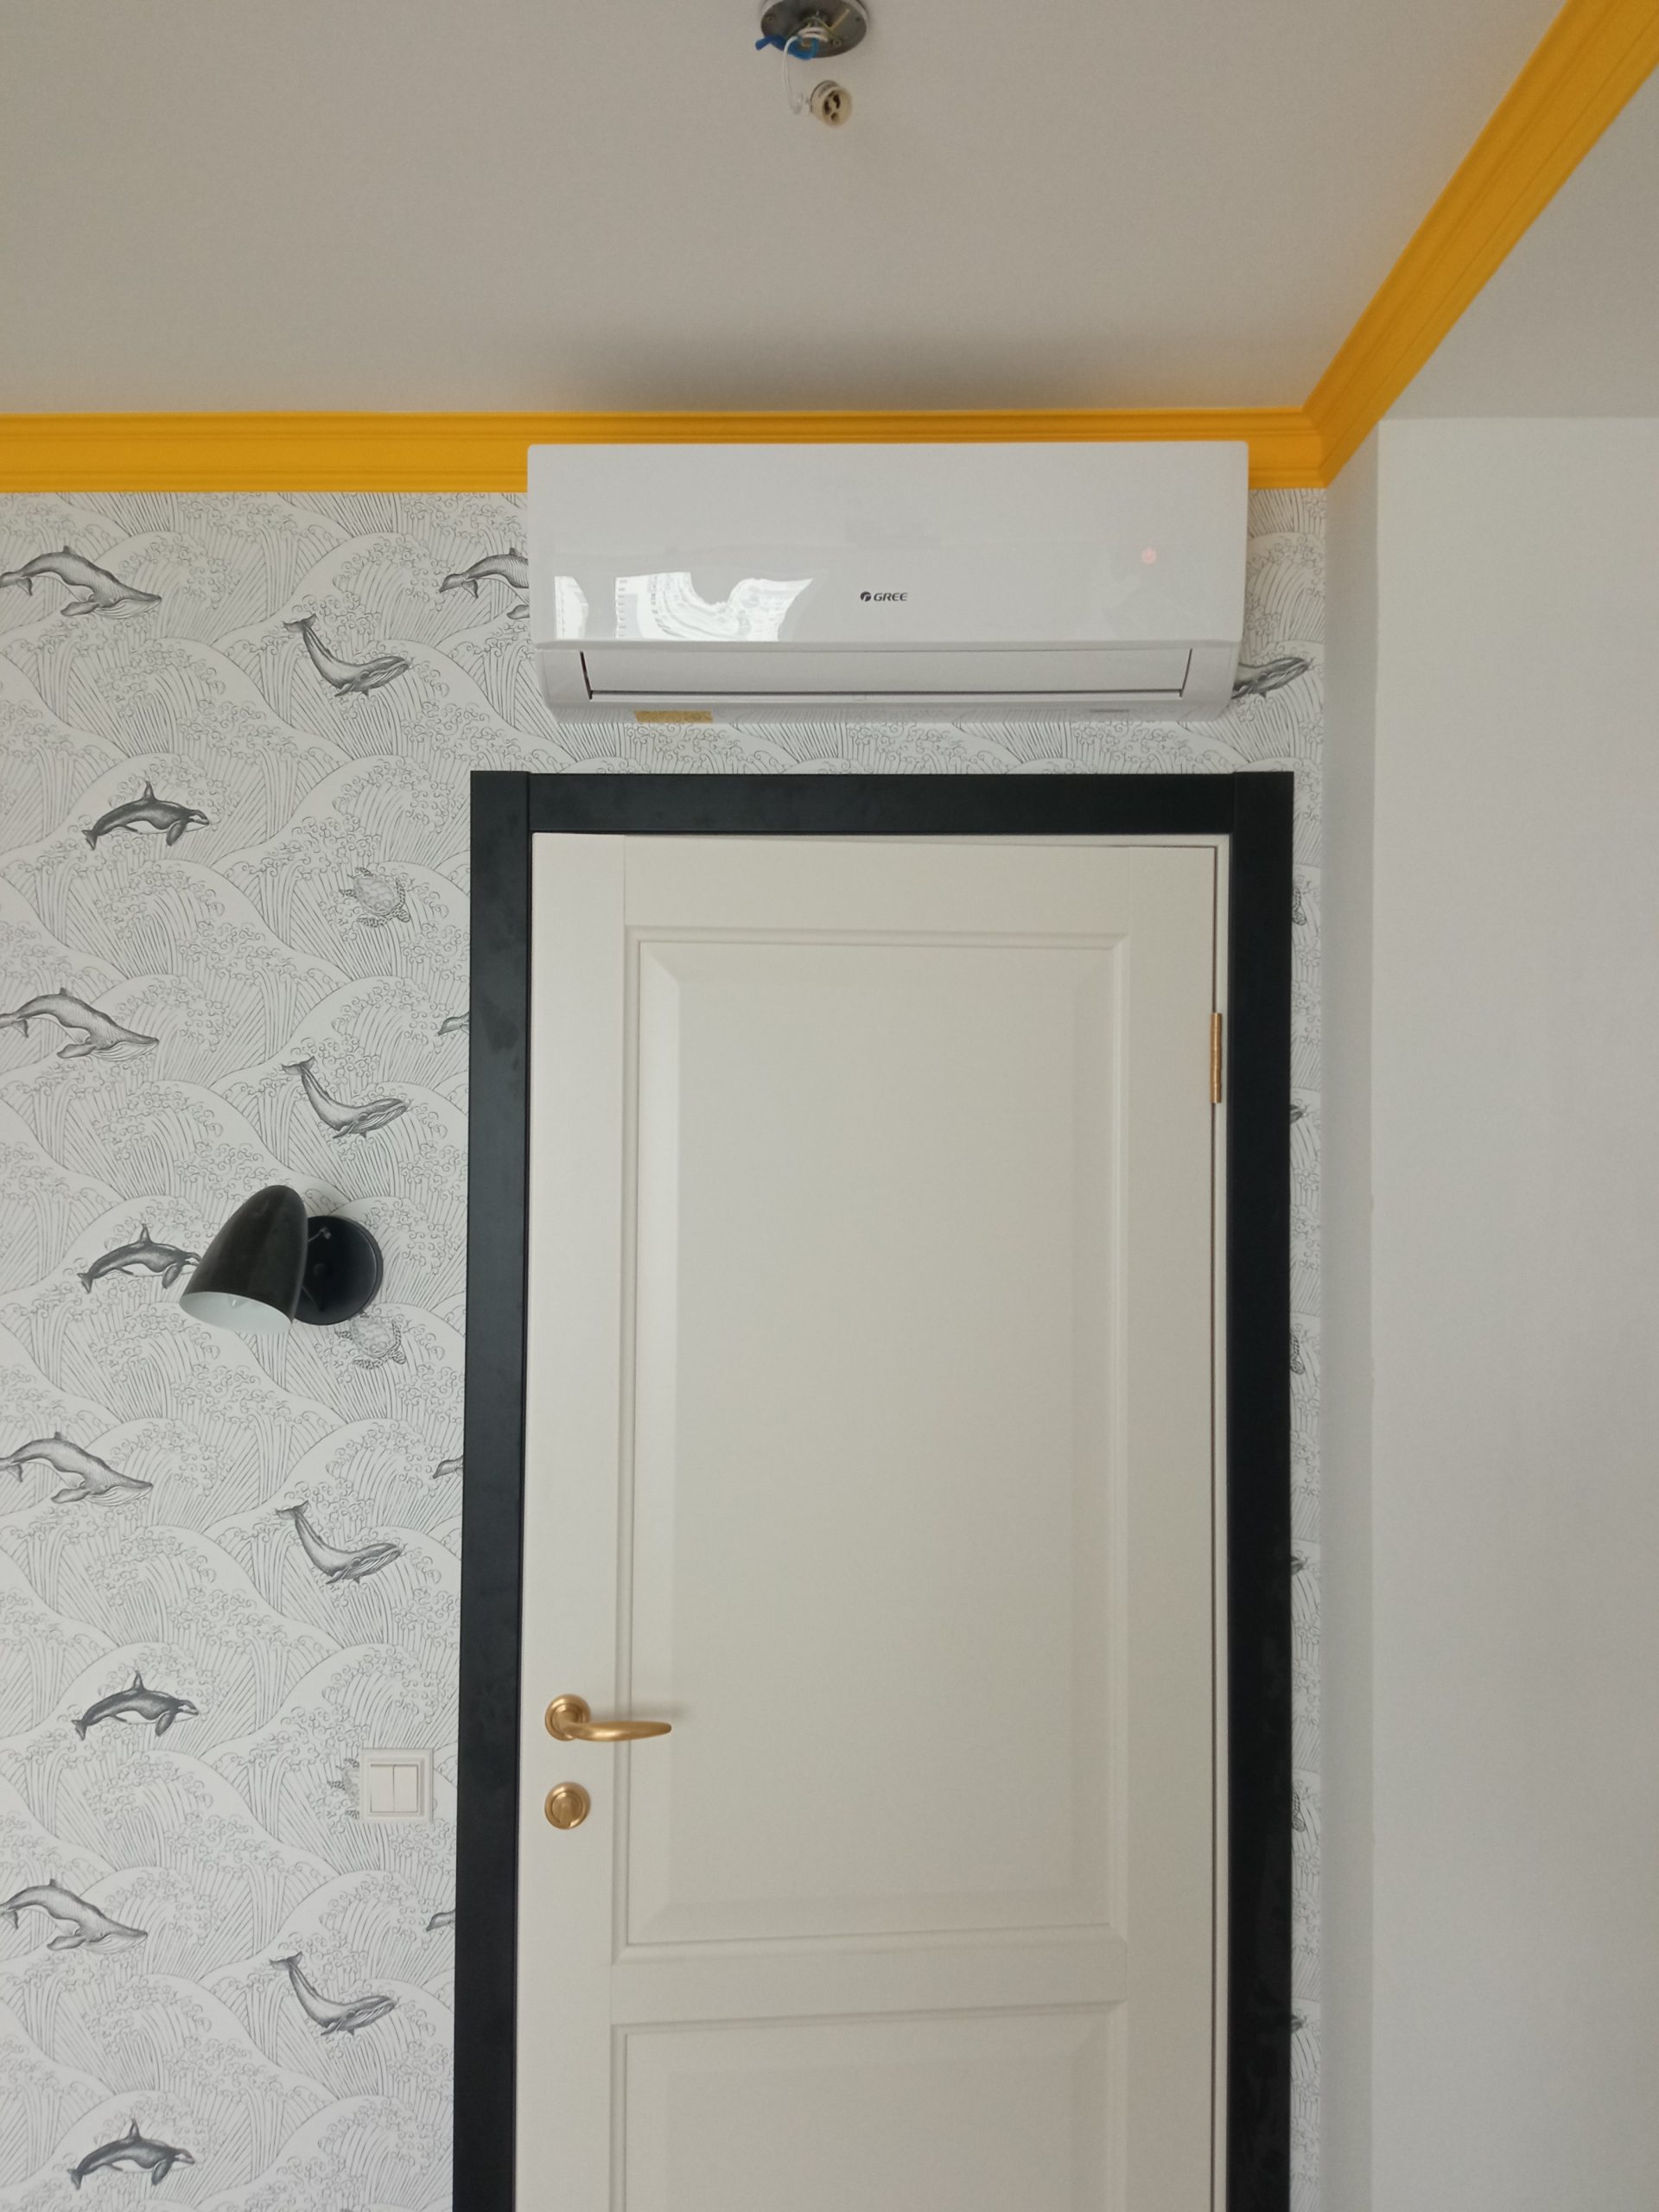 Установка кондиционера Gree над дверью на черно белой стене с желтым плинтусом